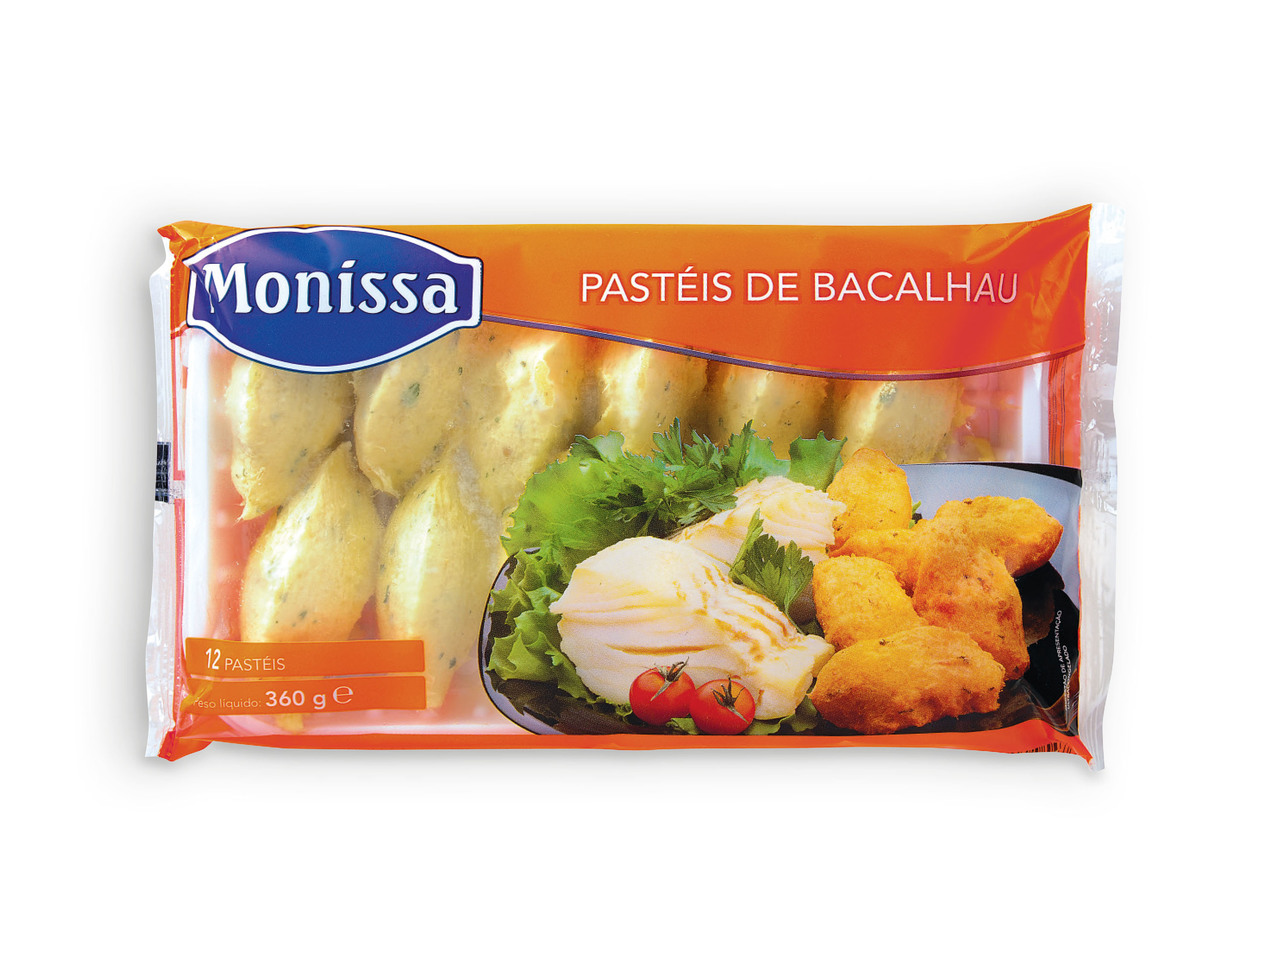 MONISSA(R) Pastéis de Bacalhau